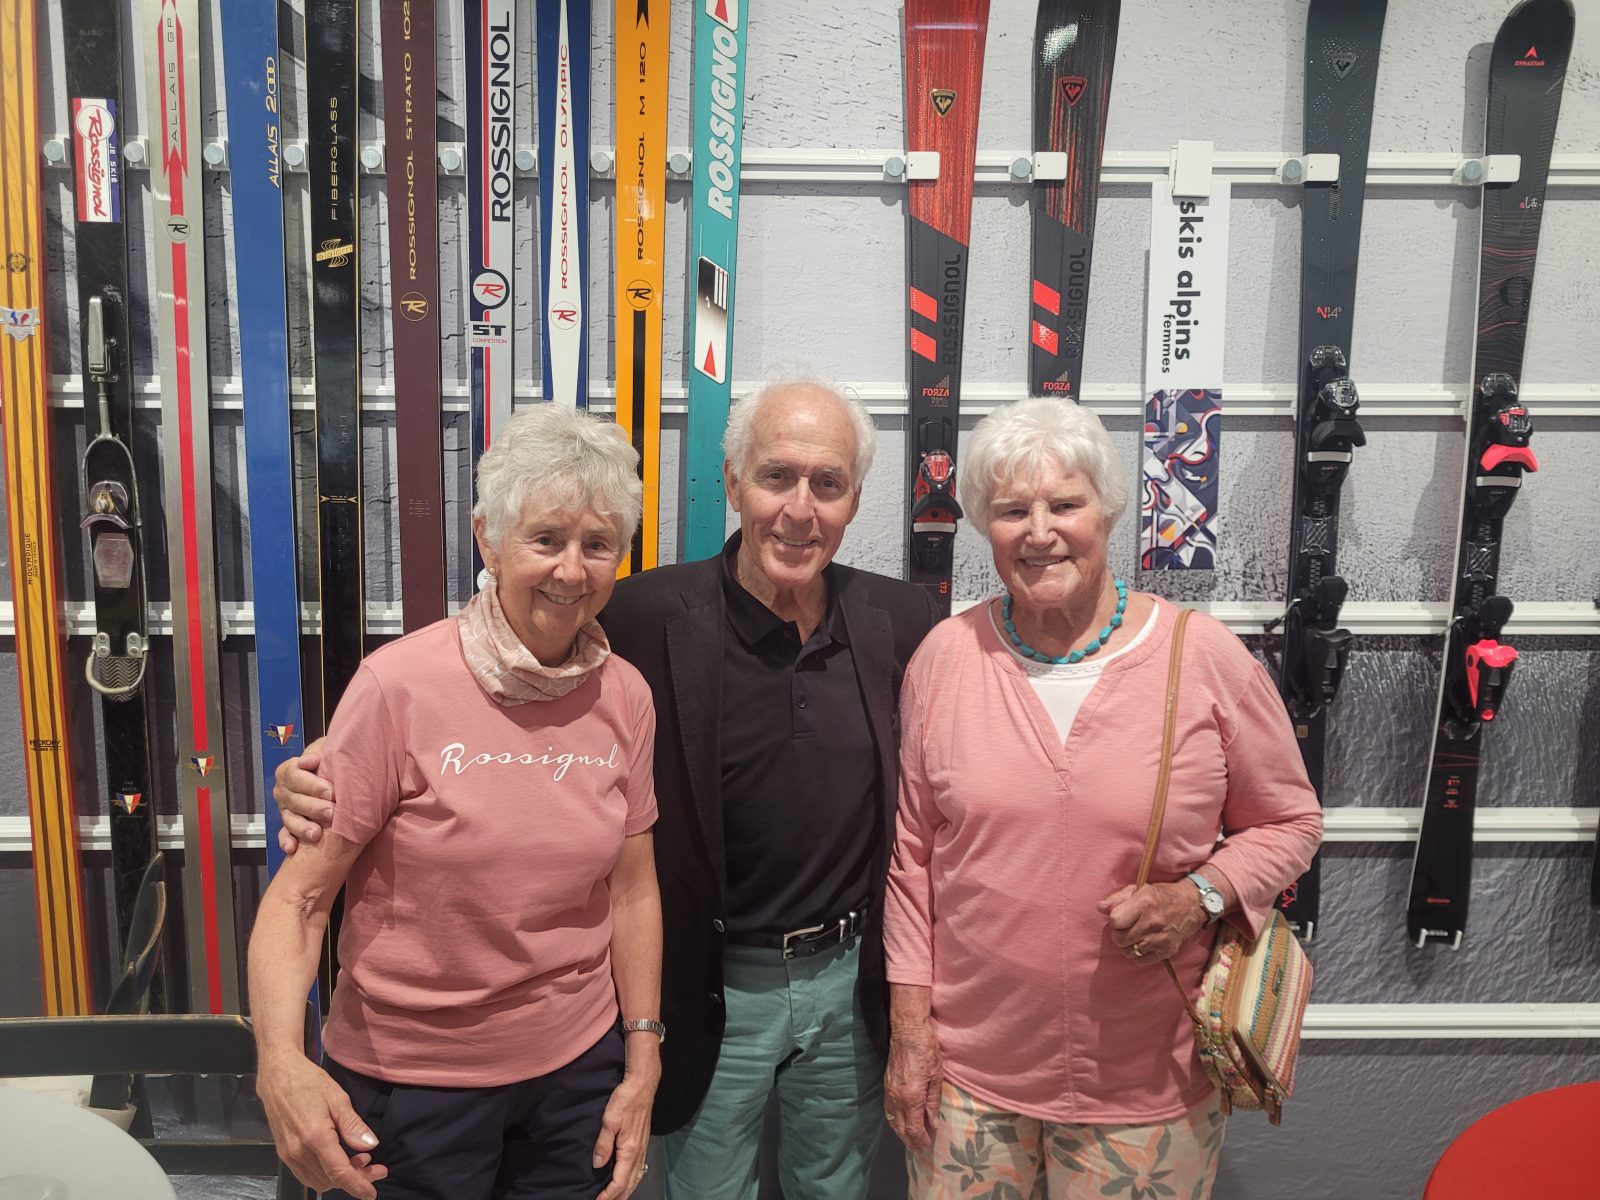 Former Olympian Nancy Greene meets fans in Bromont